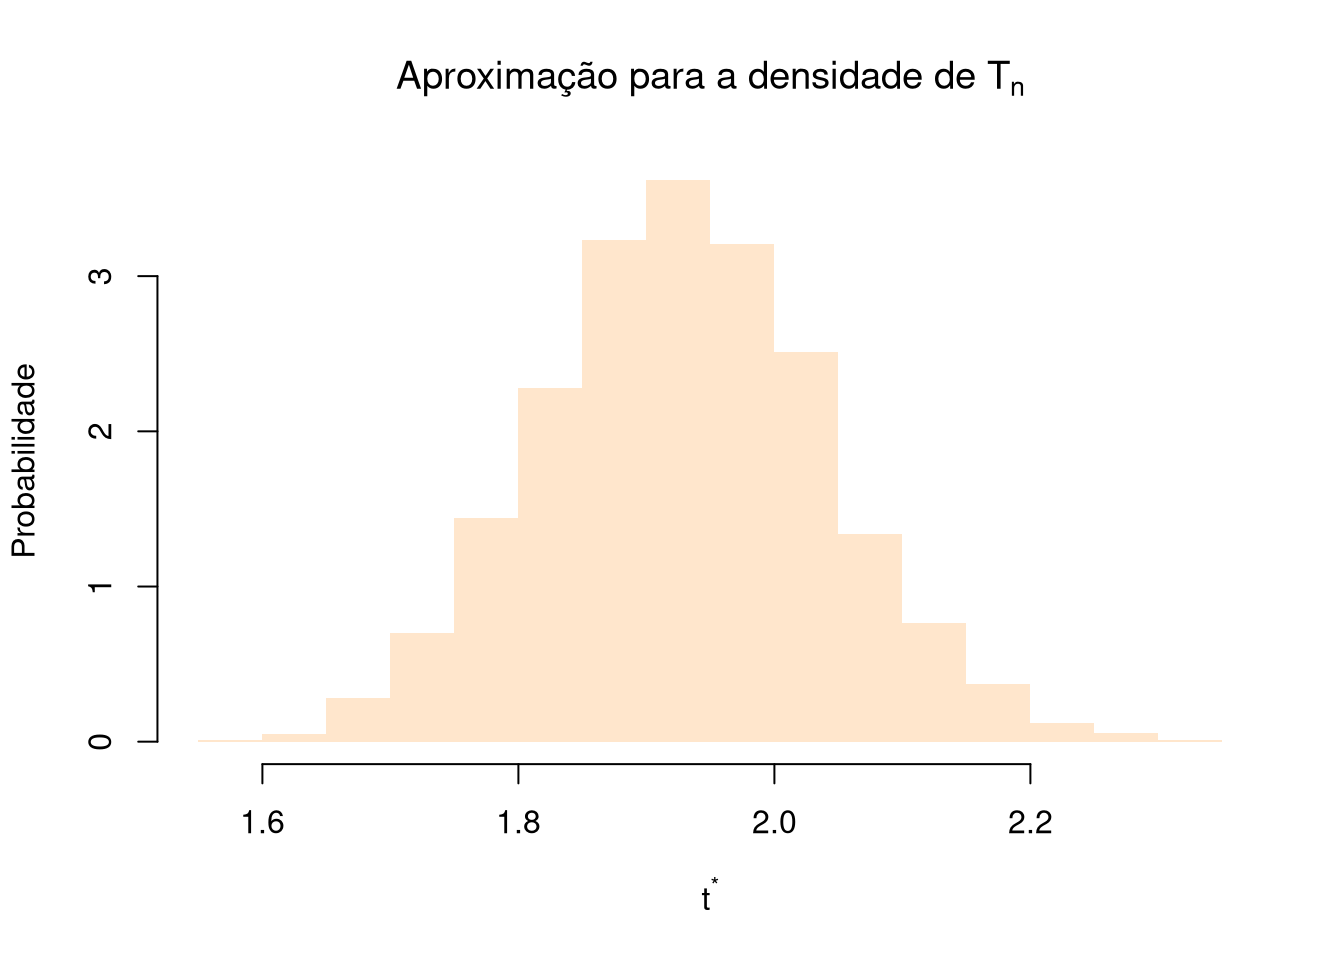 Histograma construído com base nas estimativas obtidas nas amostras bootstrap. Trata-se de uma aproximação para a densidade da estatística que nesse caso é a média amostral.